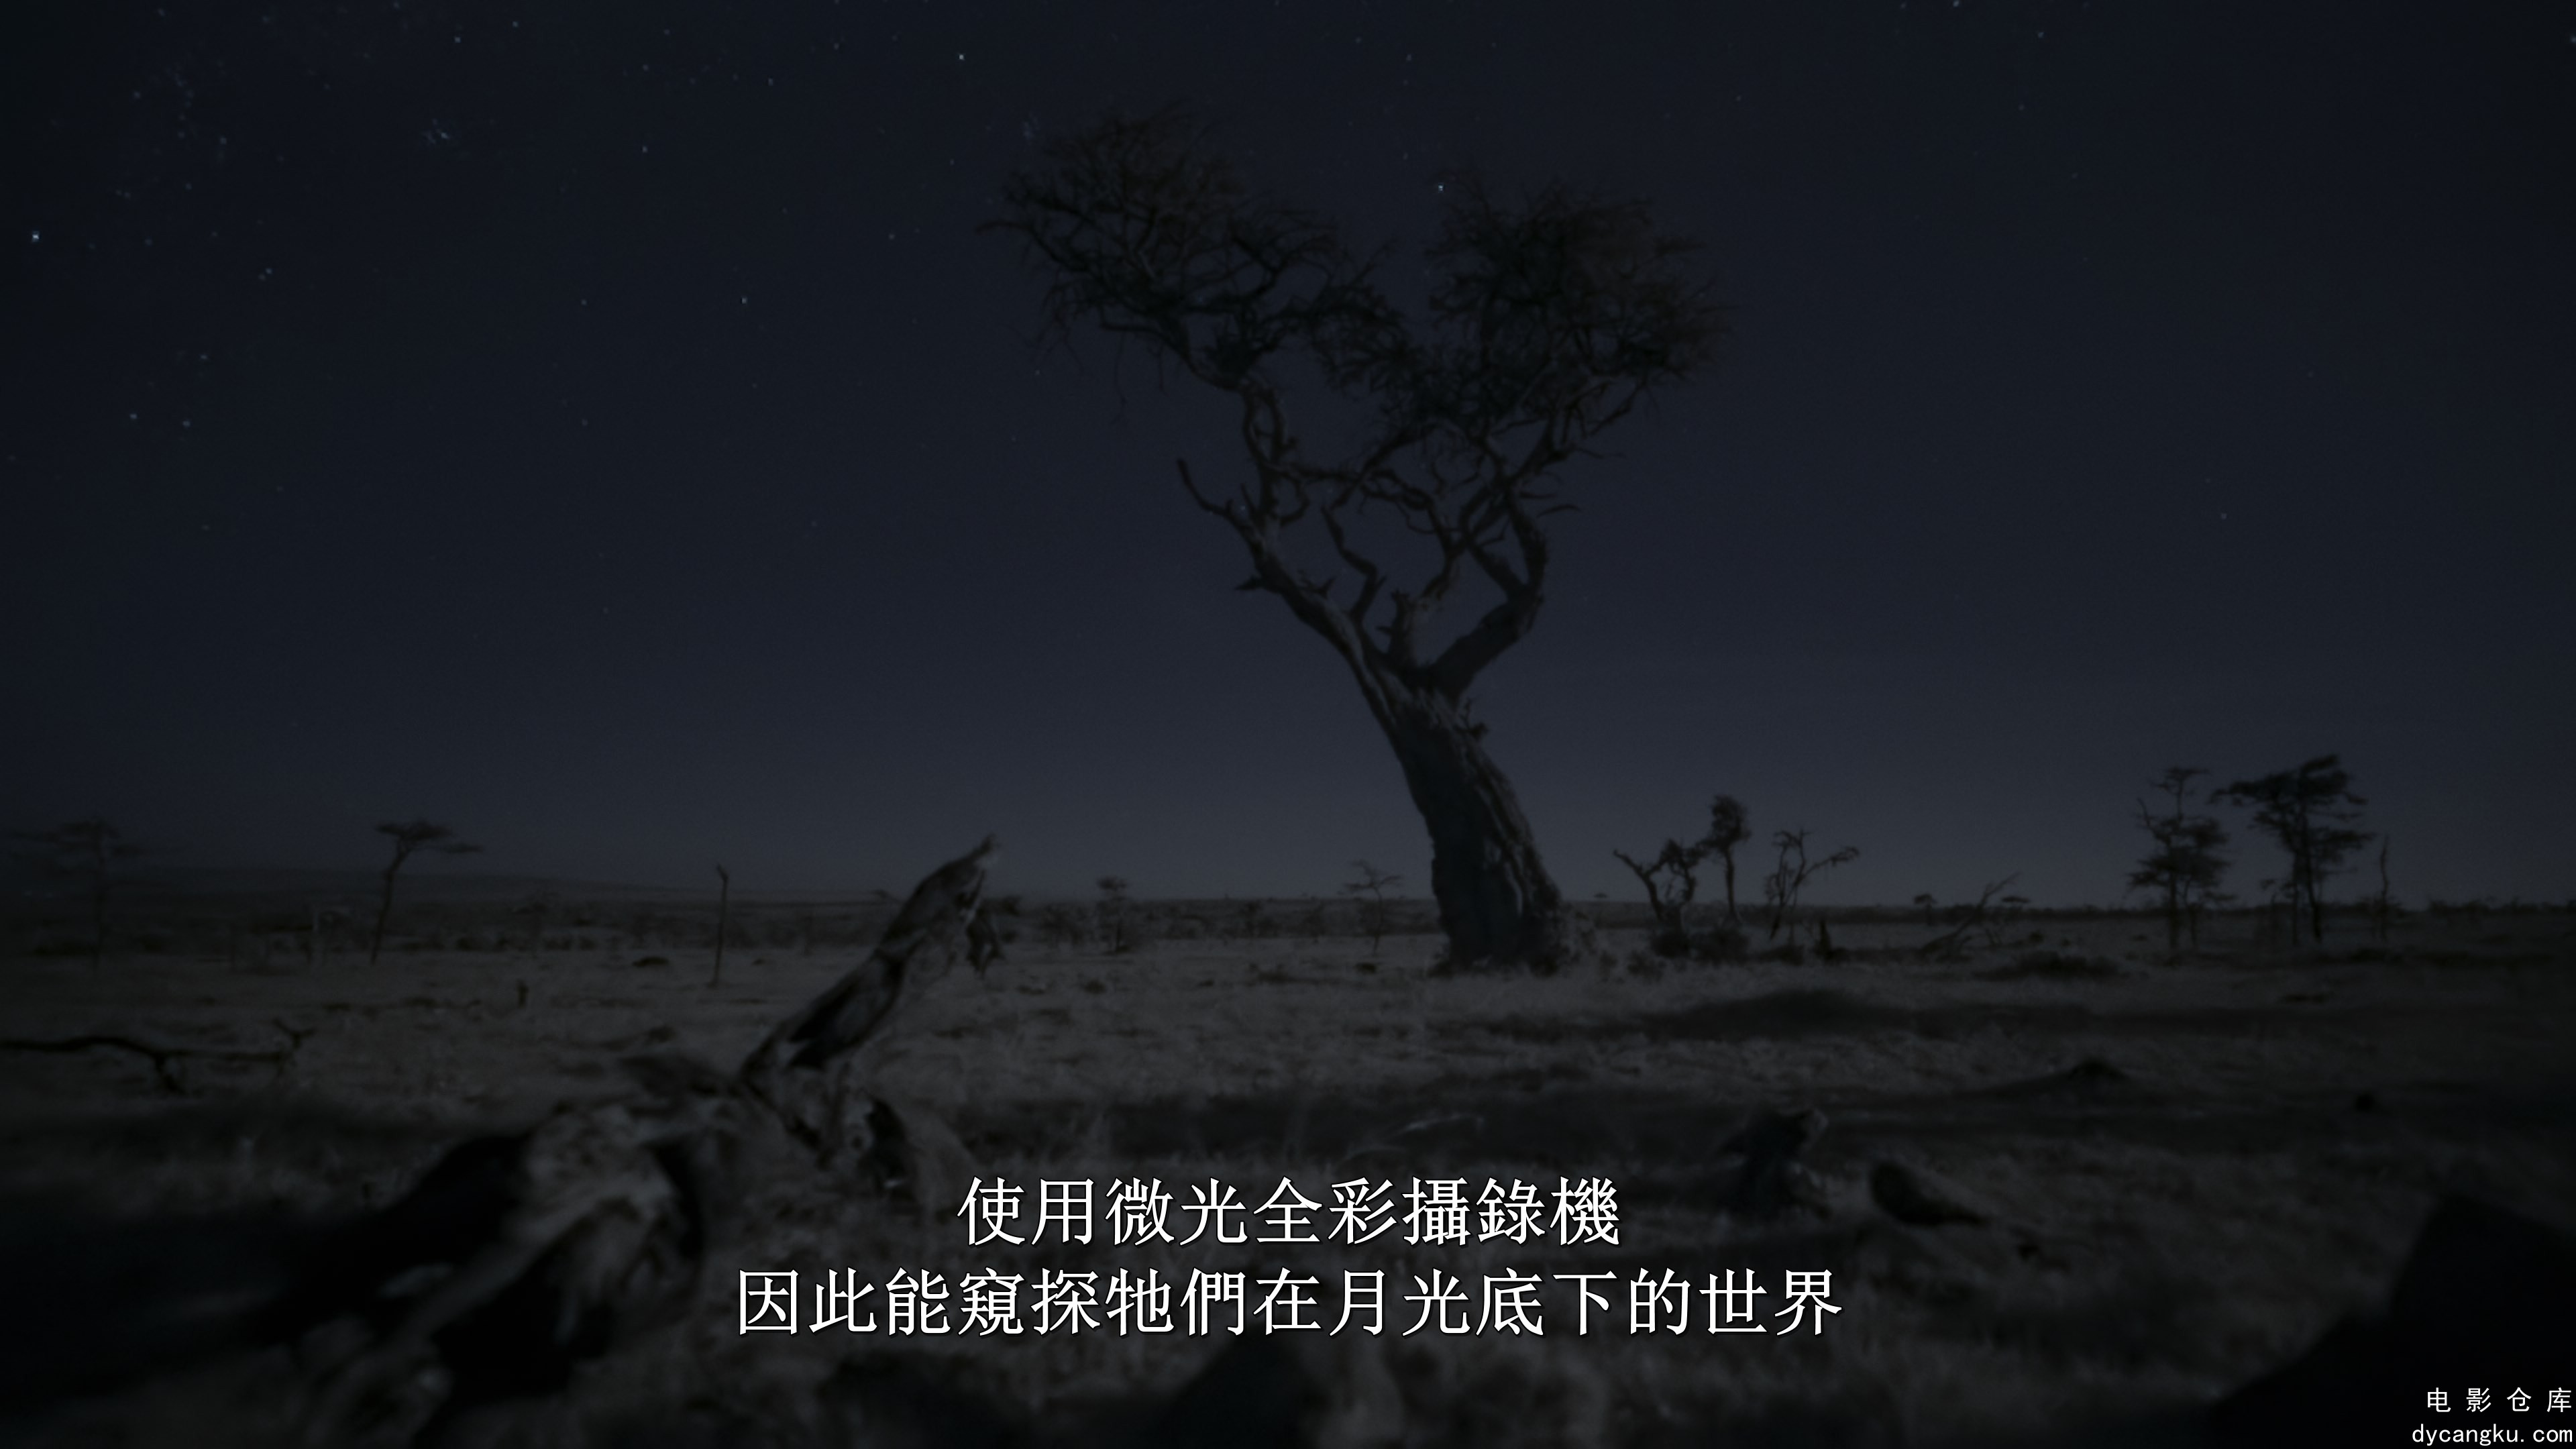 [电影仓库dycangku.com]夜色中的地球.S1.01.mkv_snapshot_05.03.845.jpg